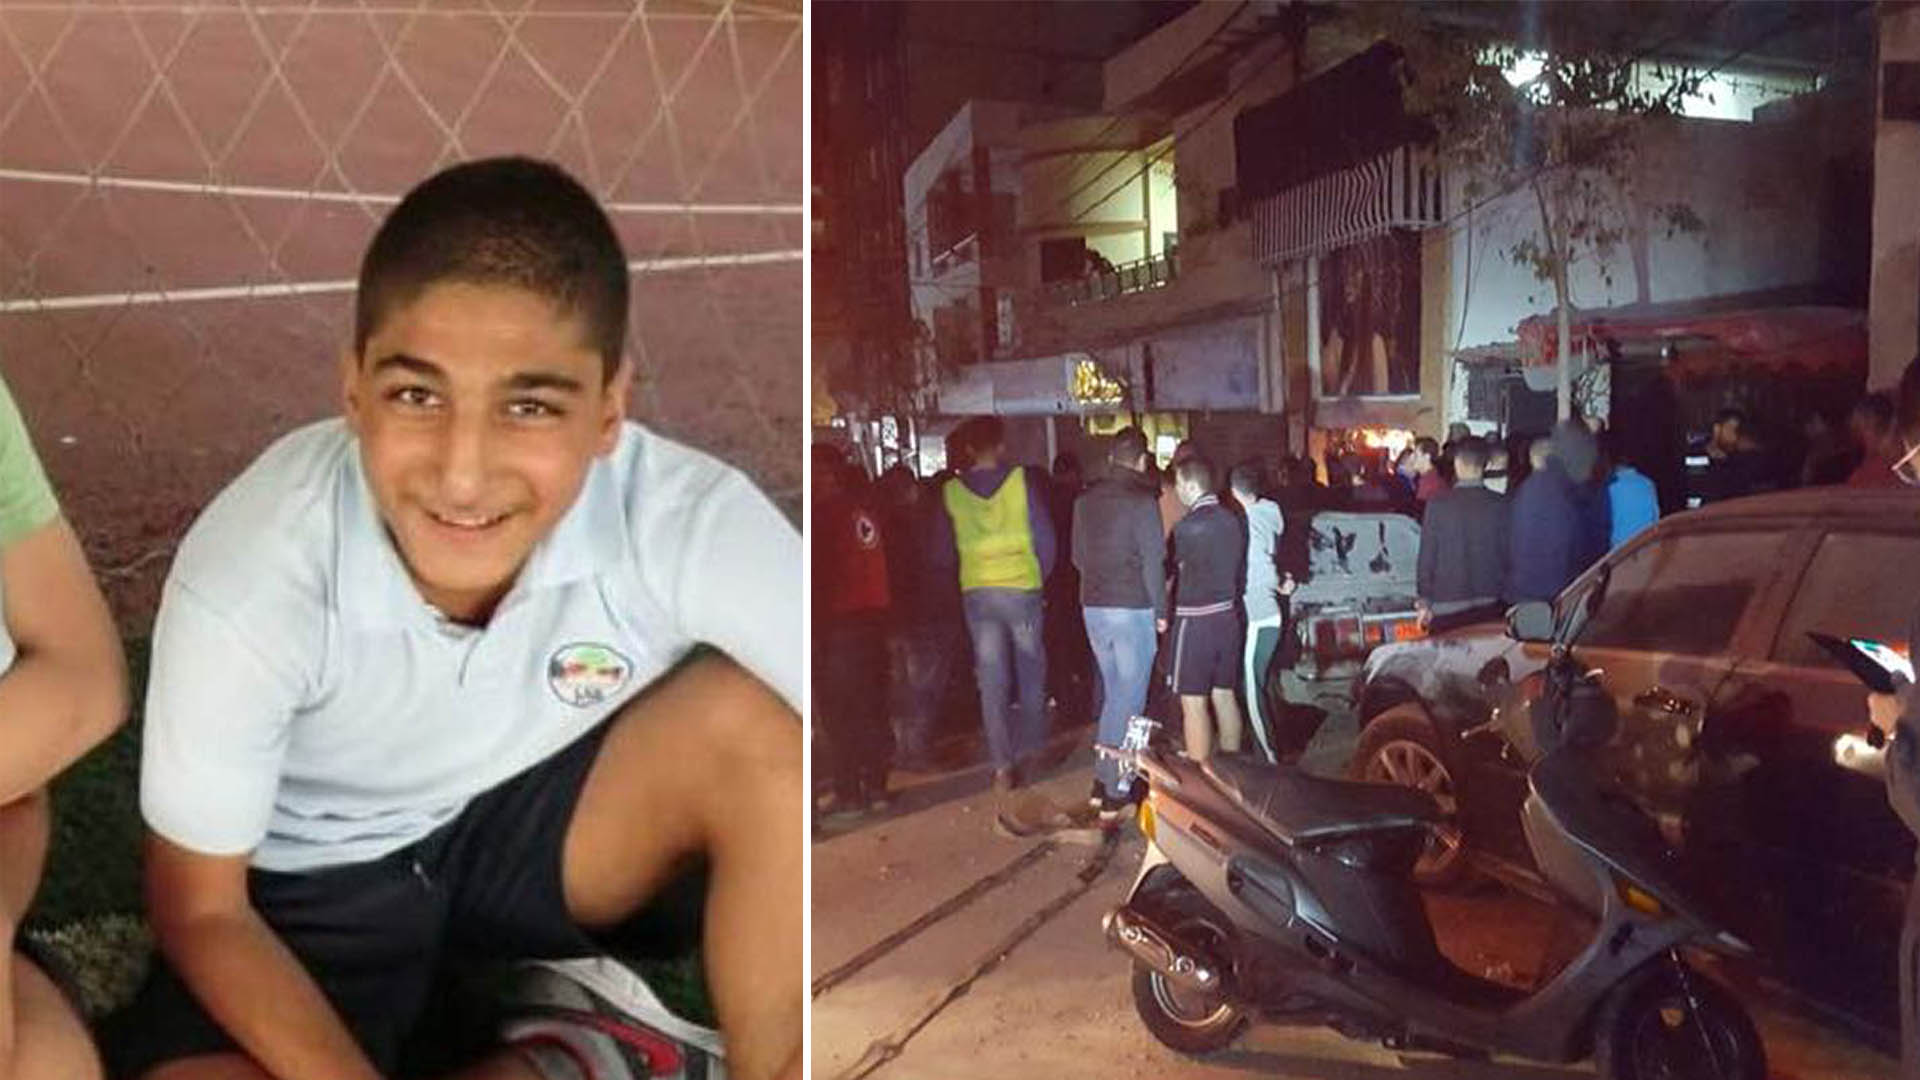 محمد ابن الـ 15 ربيعا قضى بعدما فدى عائلته بعد حريق شب في منزلها.. غدرته النيران و رحل 